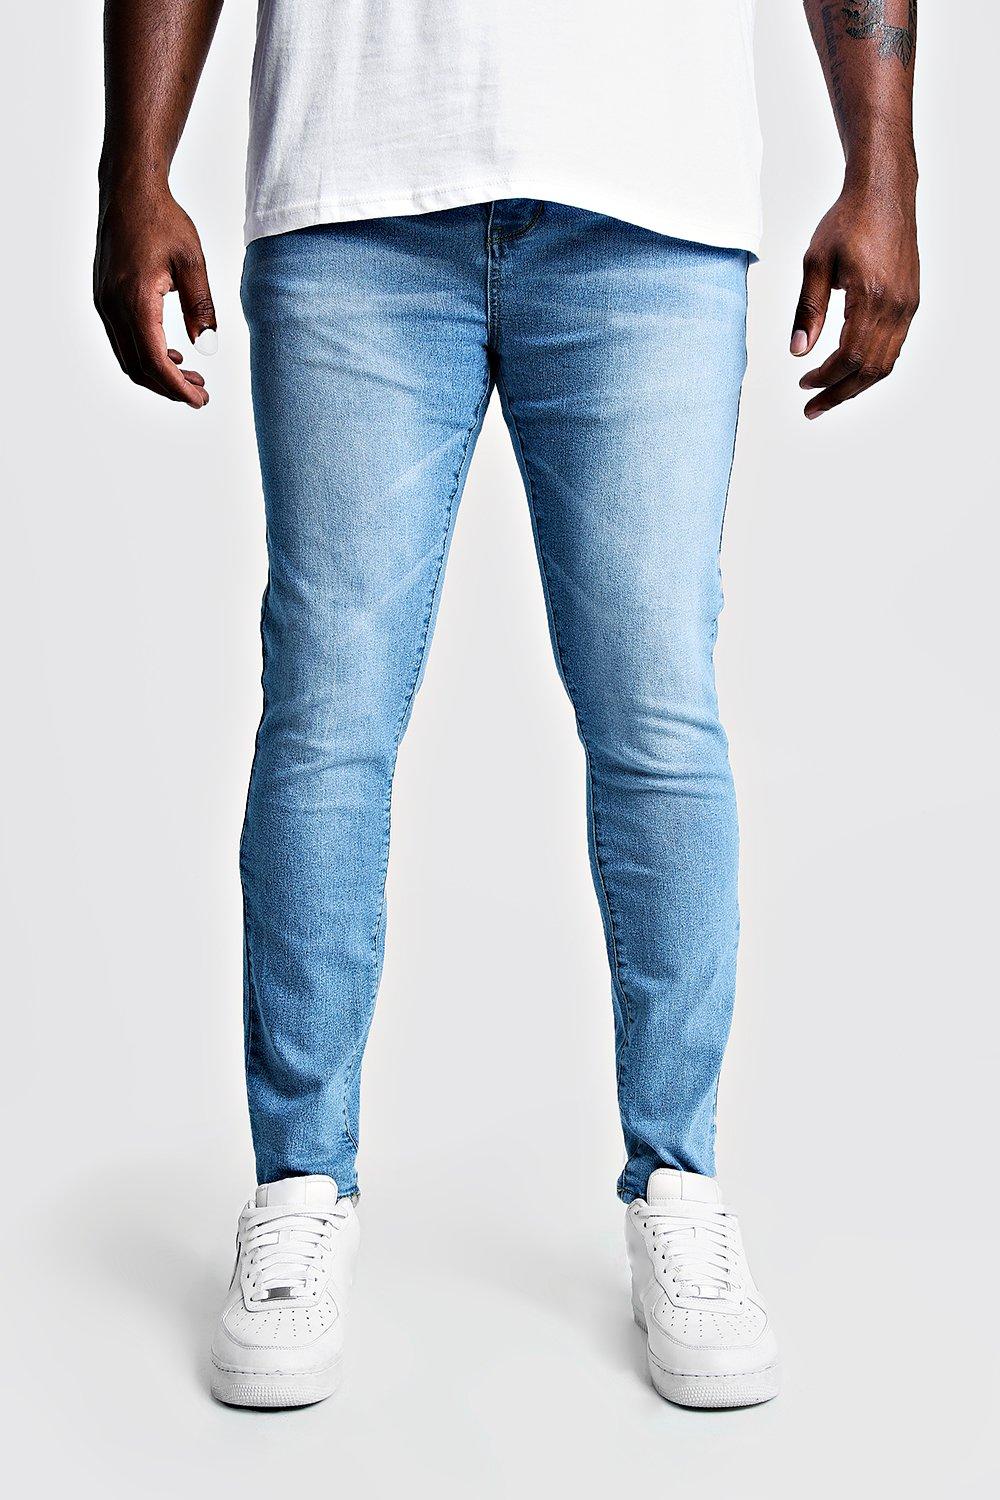 cheap tall jeans